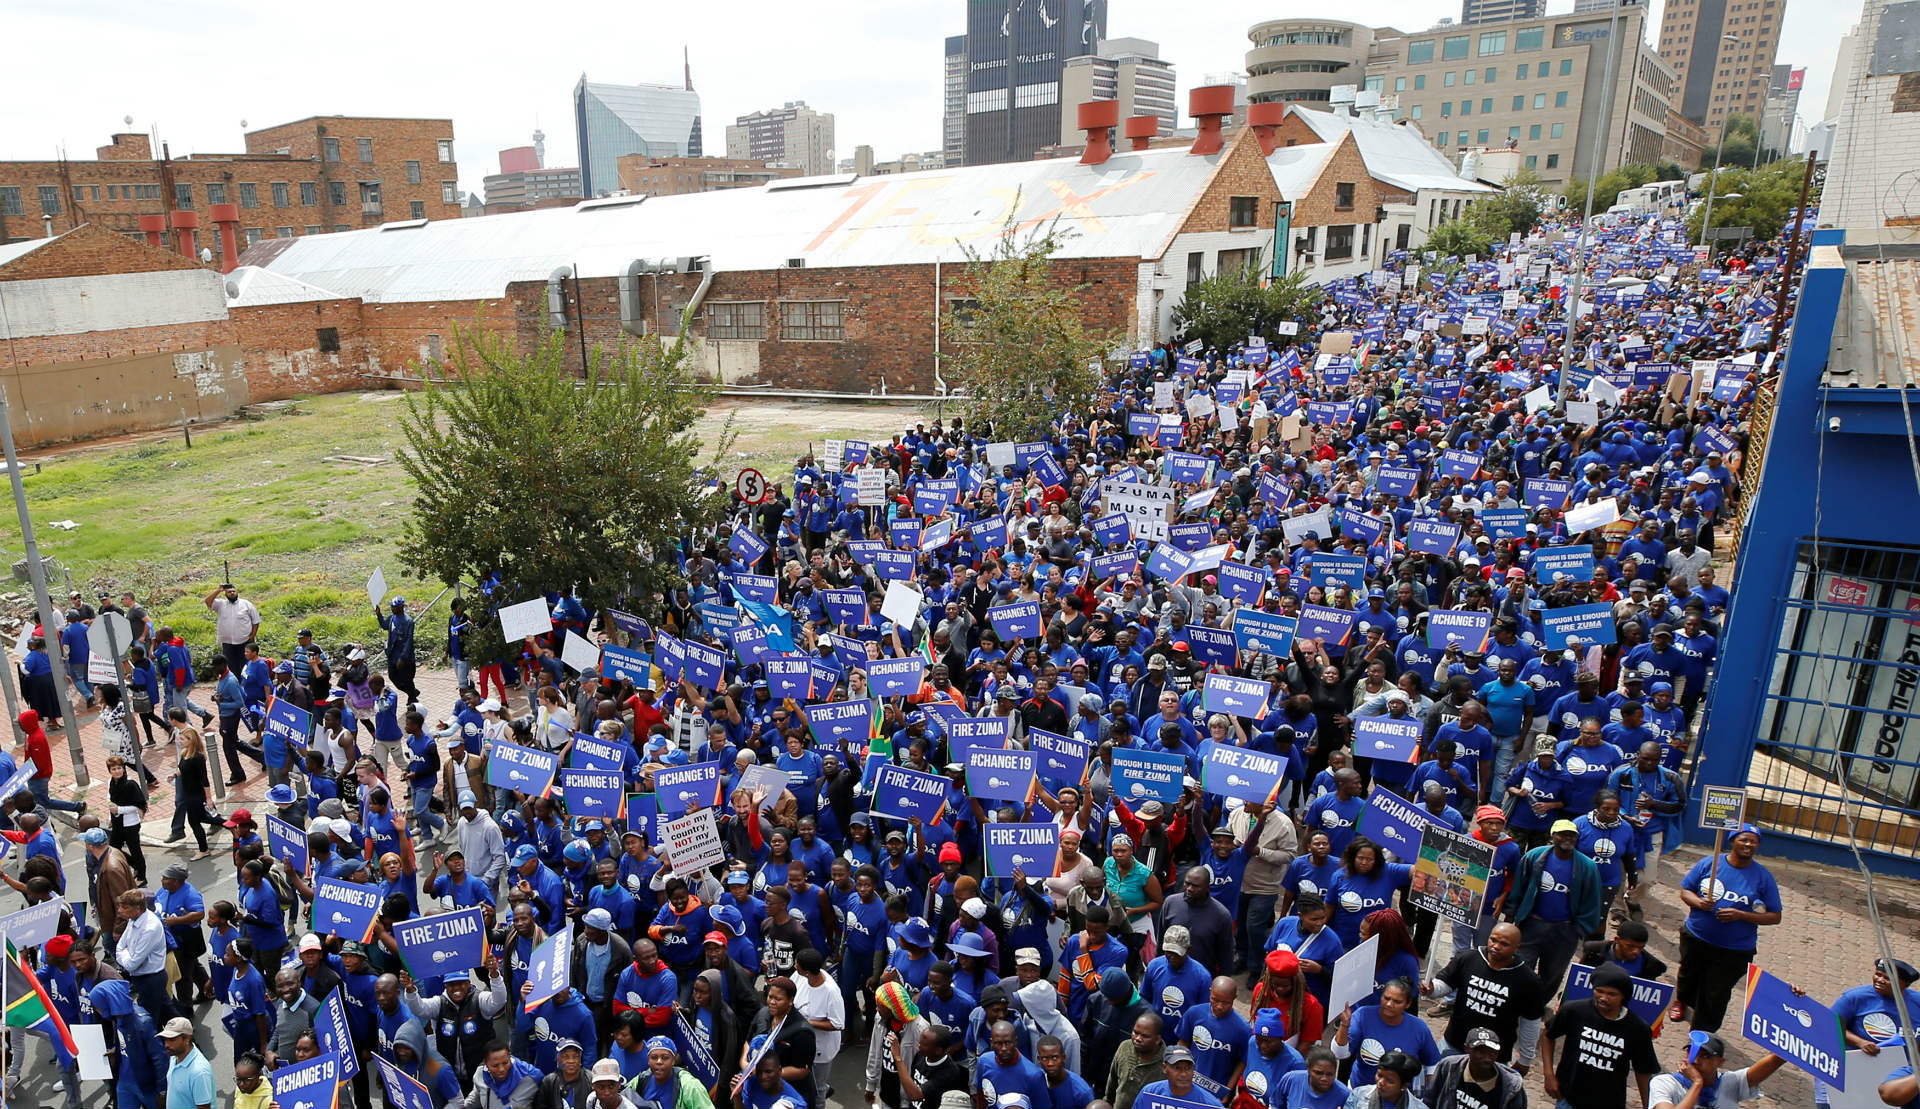 Manifestaciones en toda Sudáfrica exigen la dimisión del presidente Zuma